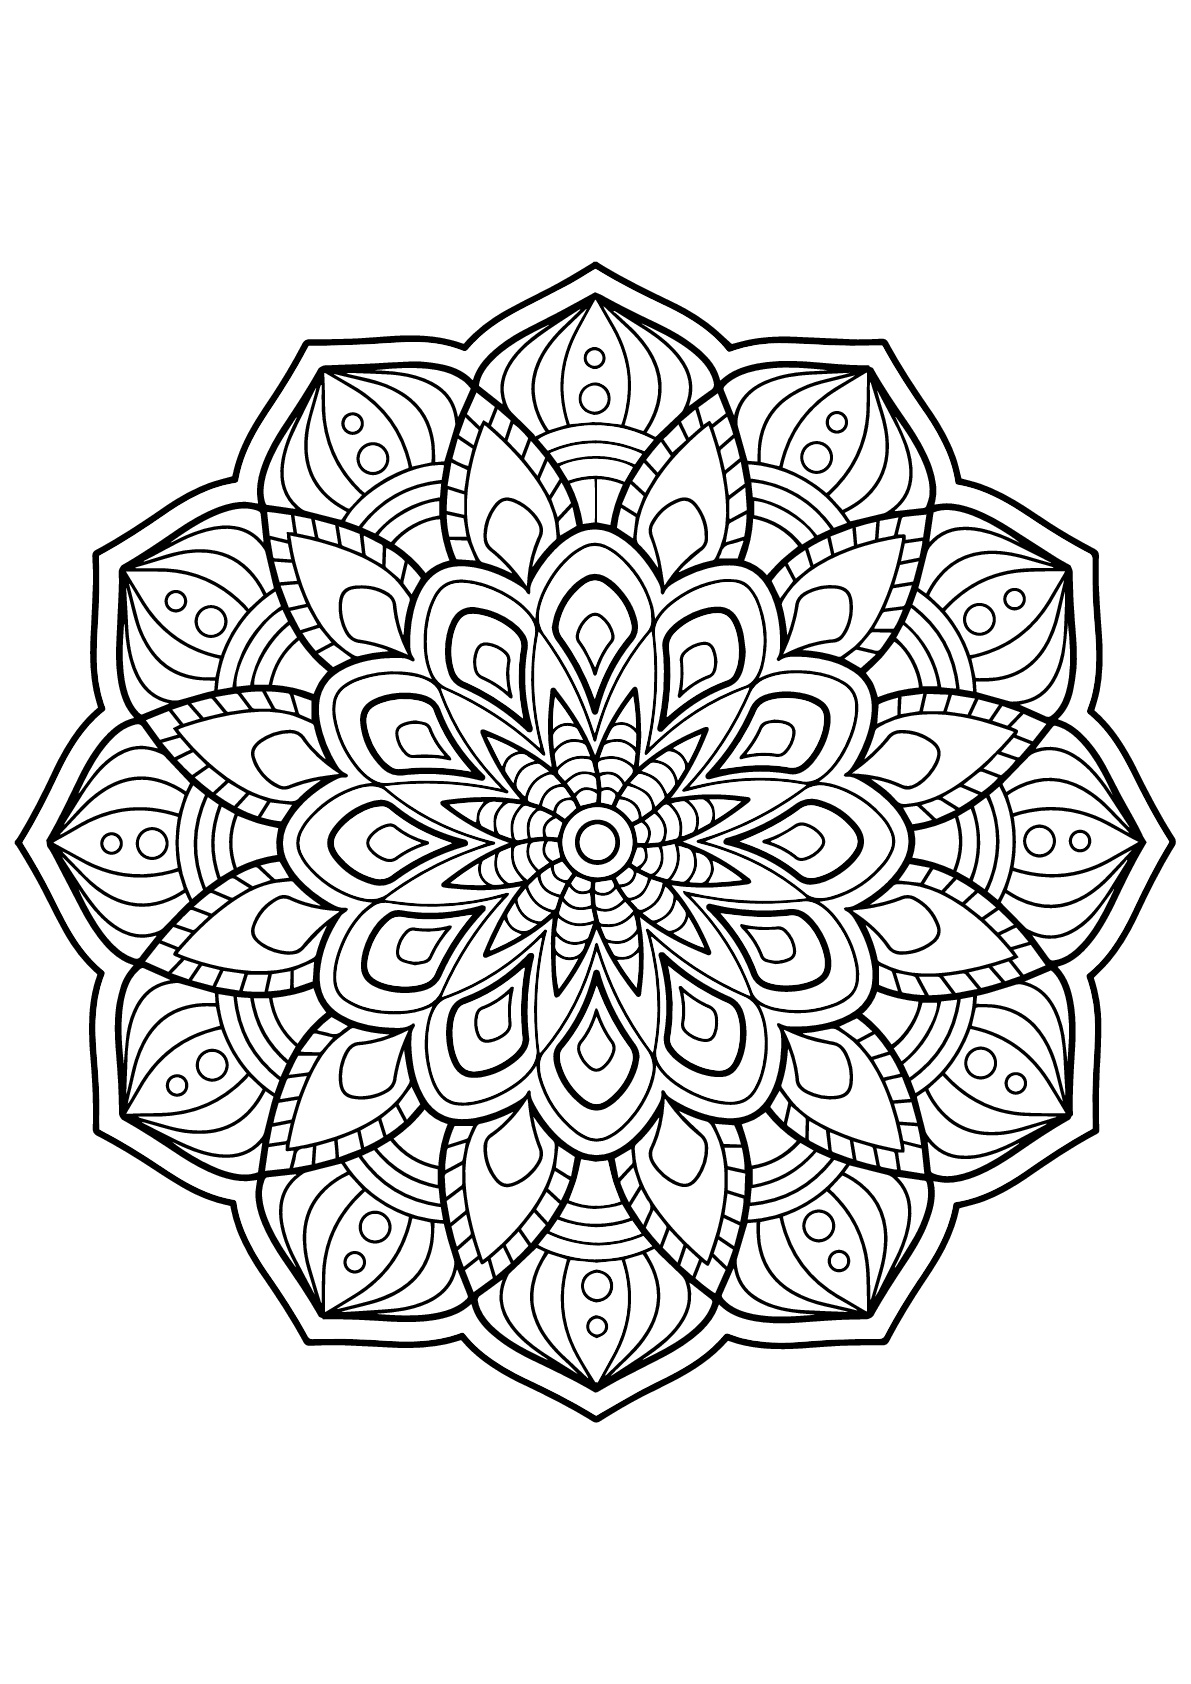 Mandala voller schöner Details aus Free Coloring Book für Erwachsene